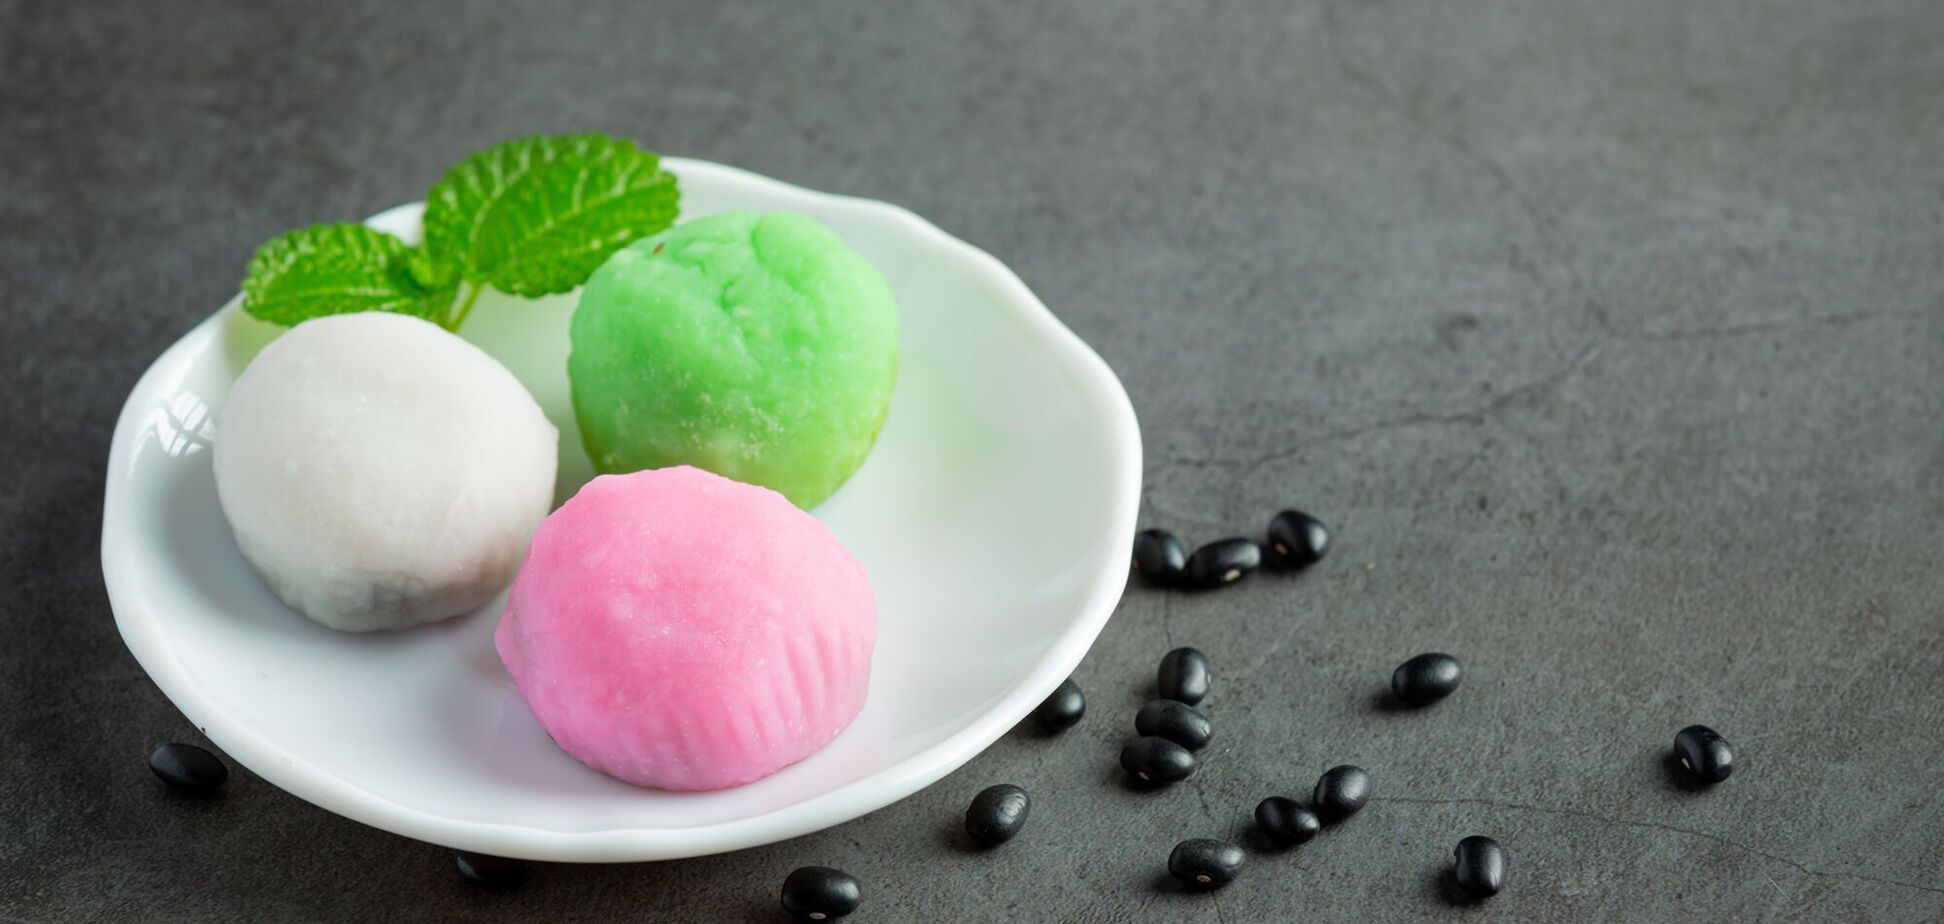 Моти с мороженым: как приготовить популярный японский десерт дома